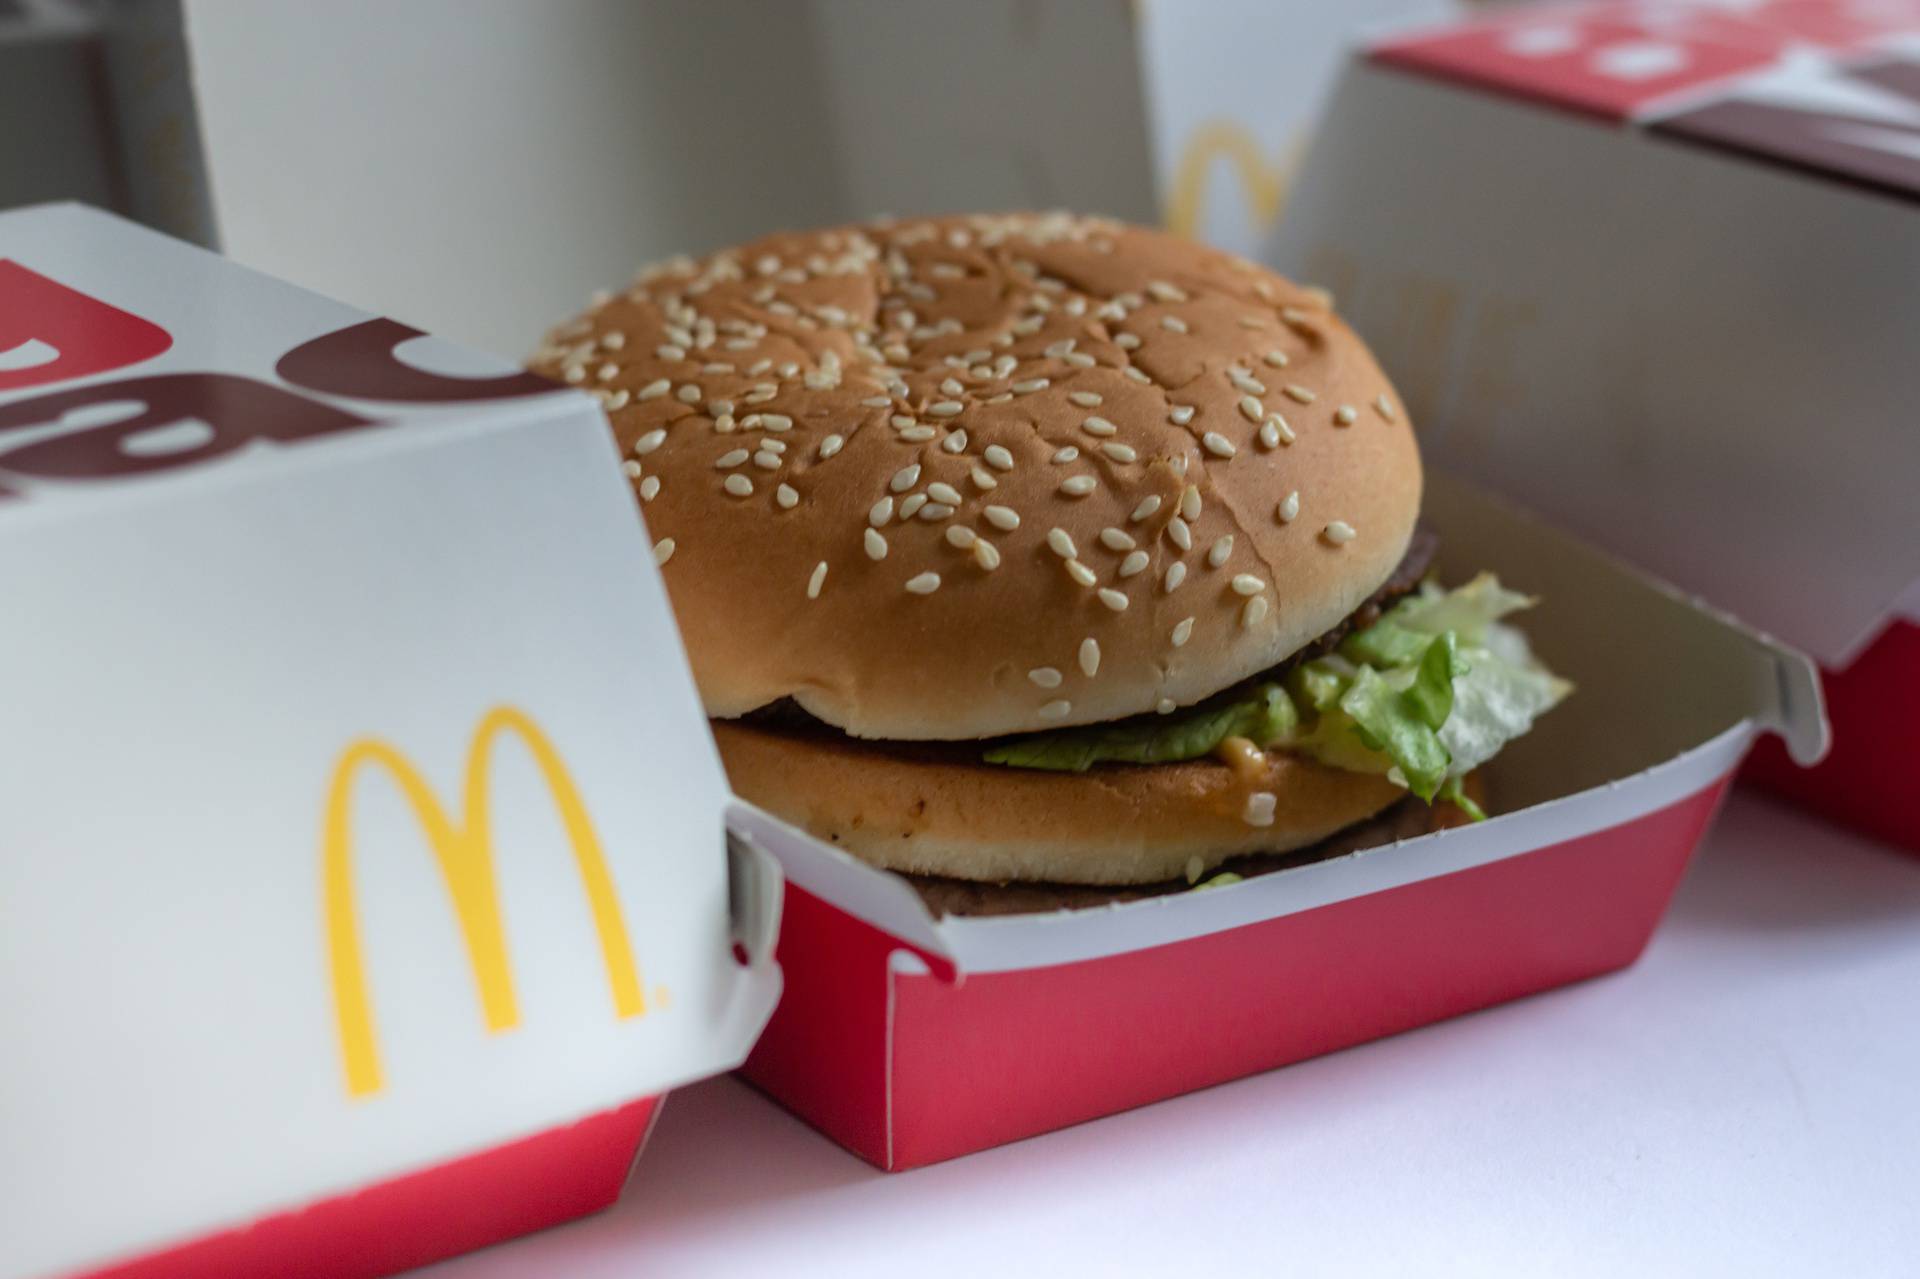 Znate li zašto je McDonald'sov logo žute i crvene boje, mnogi su se iznenadili kad su saznali